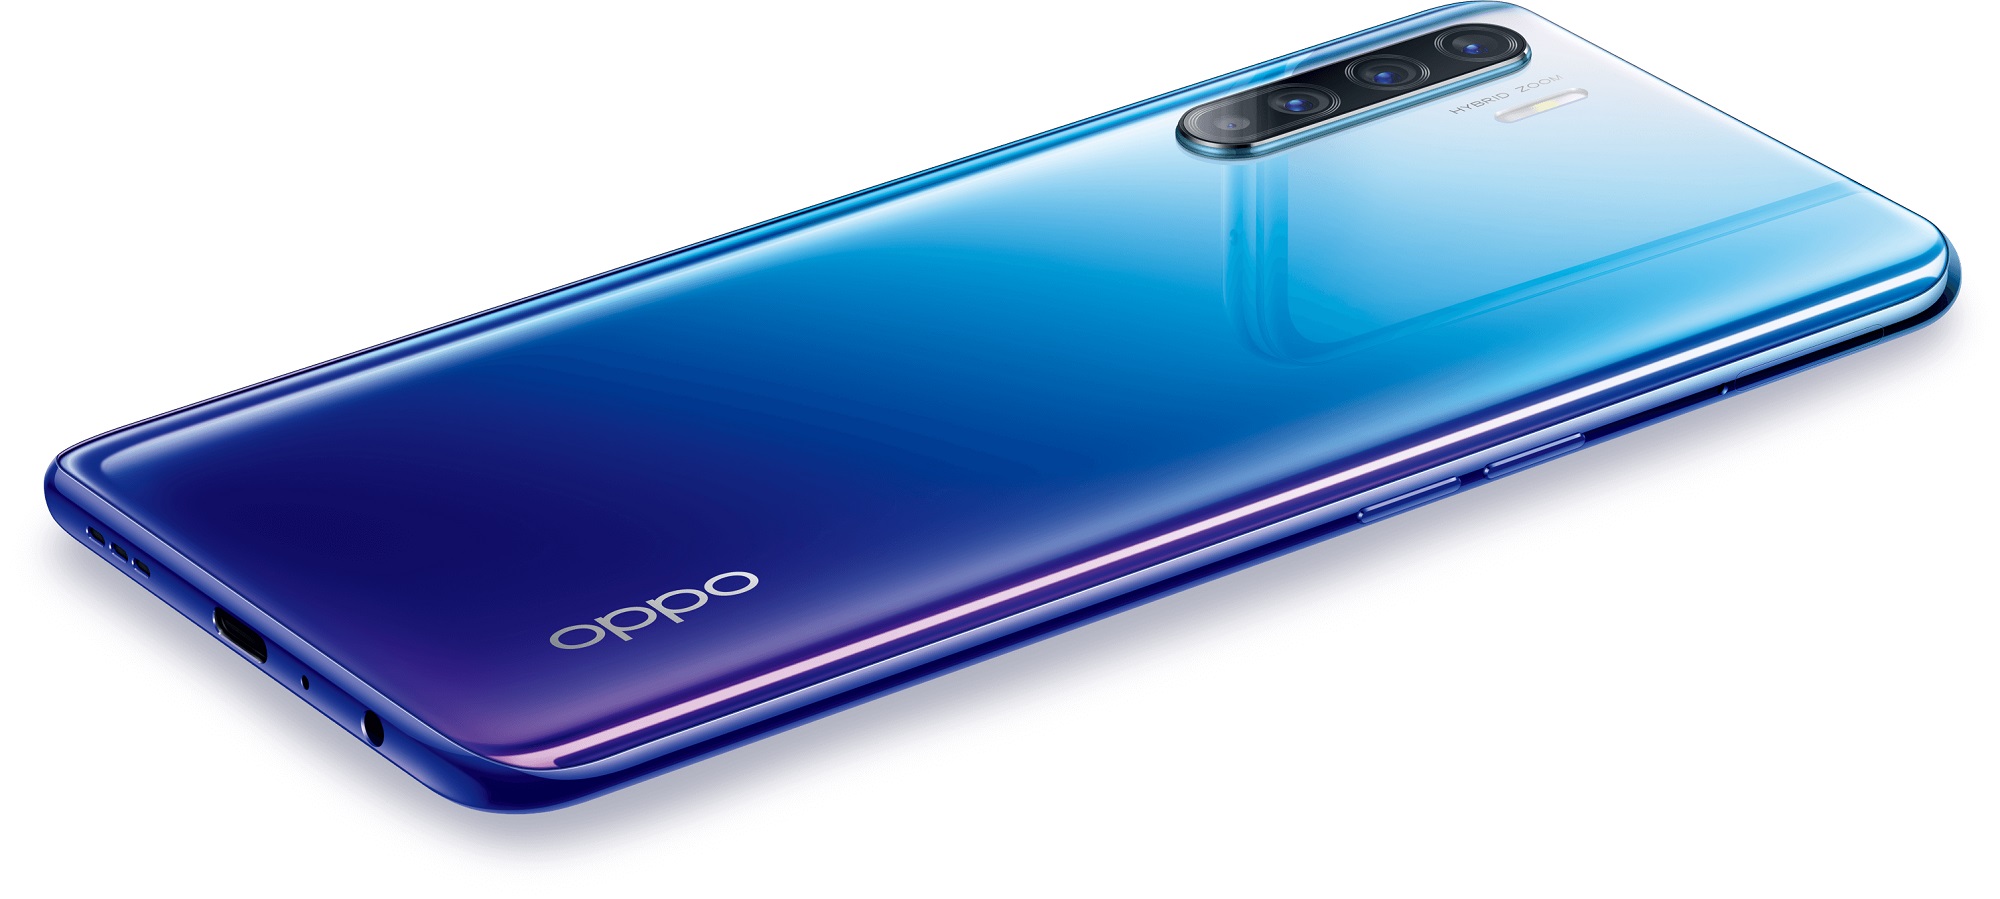 Oppo Reno 3 smartphone